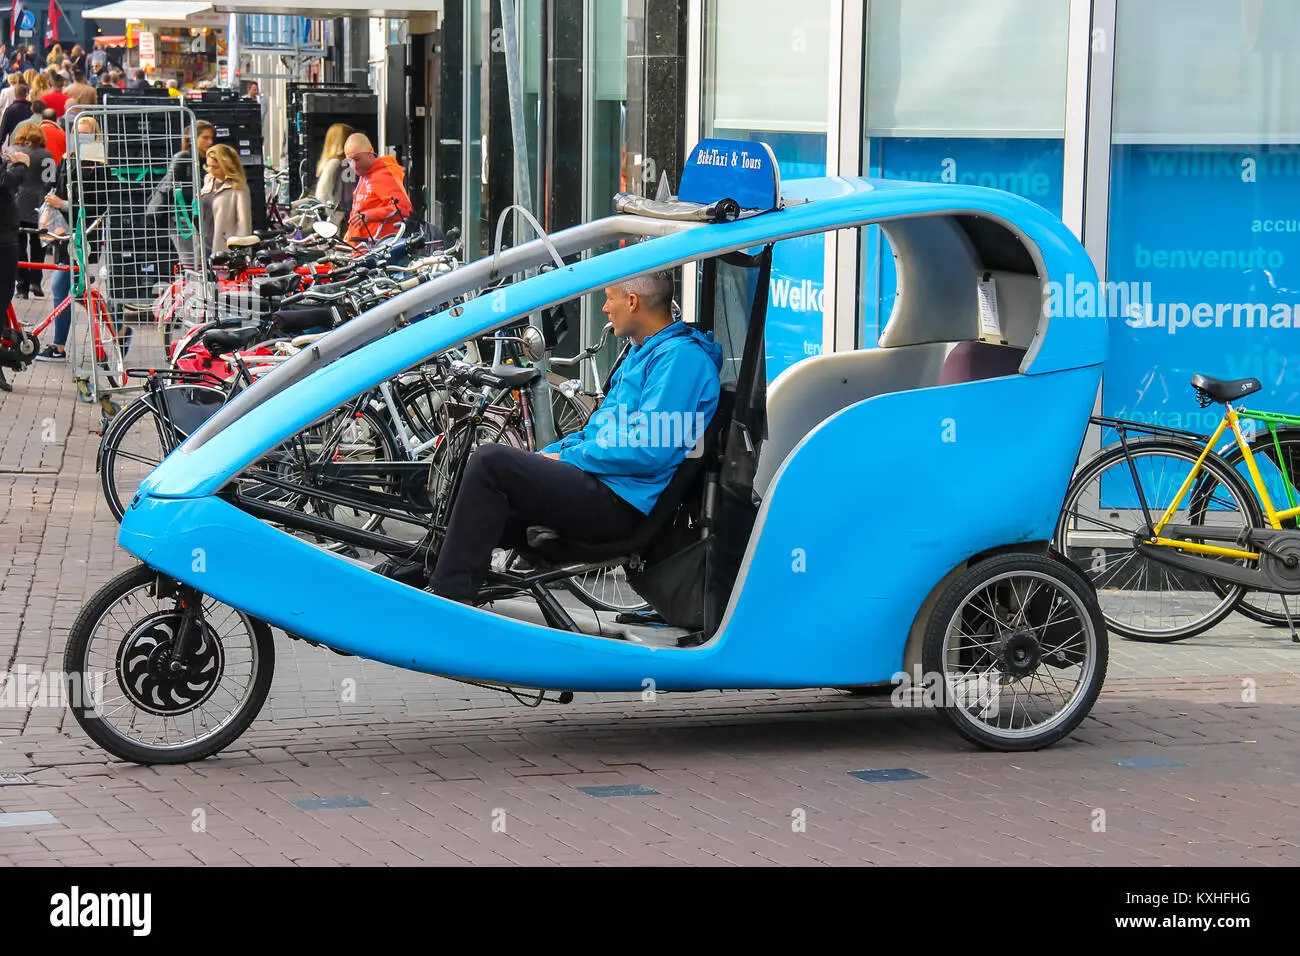 bicicletas taxi en amsterdam - Cuánto cuesta una bicicleta en Ámsterdam